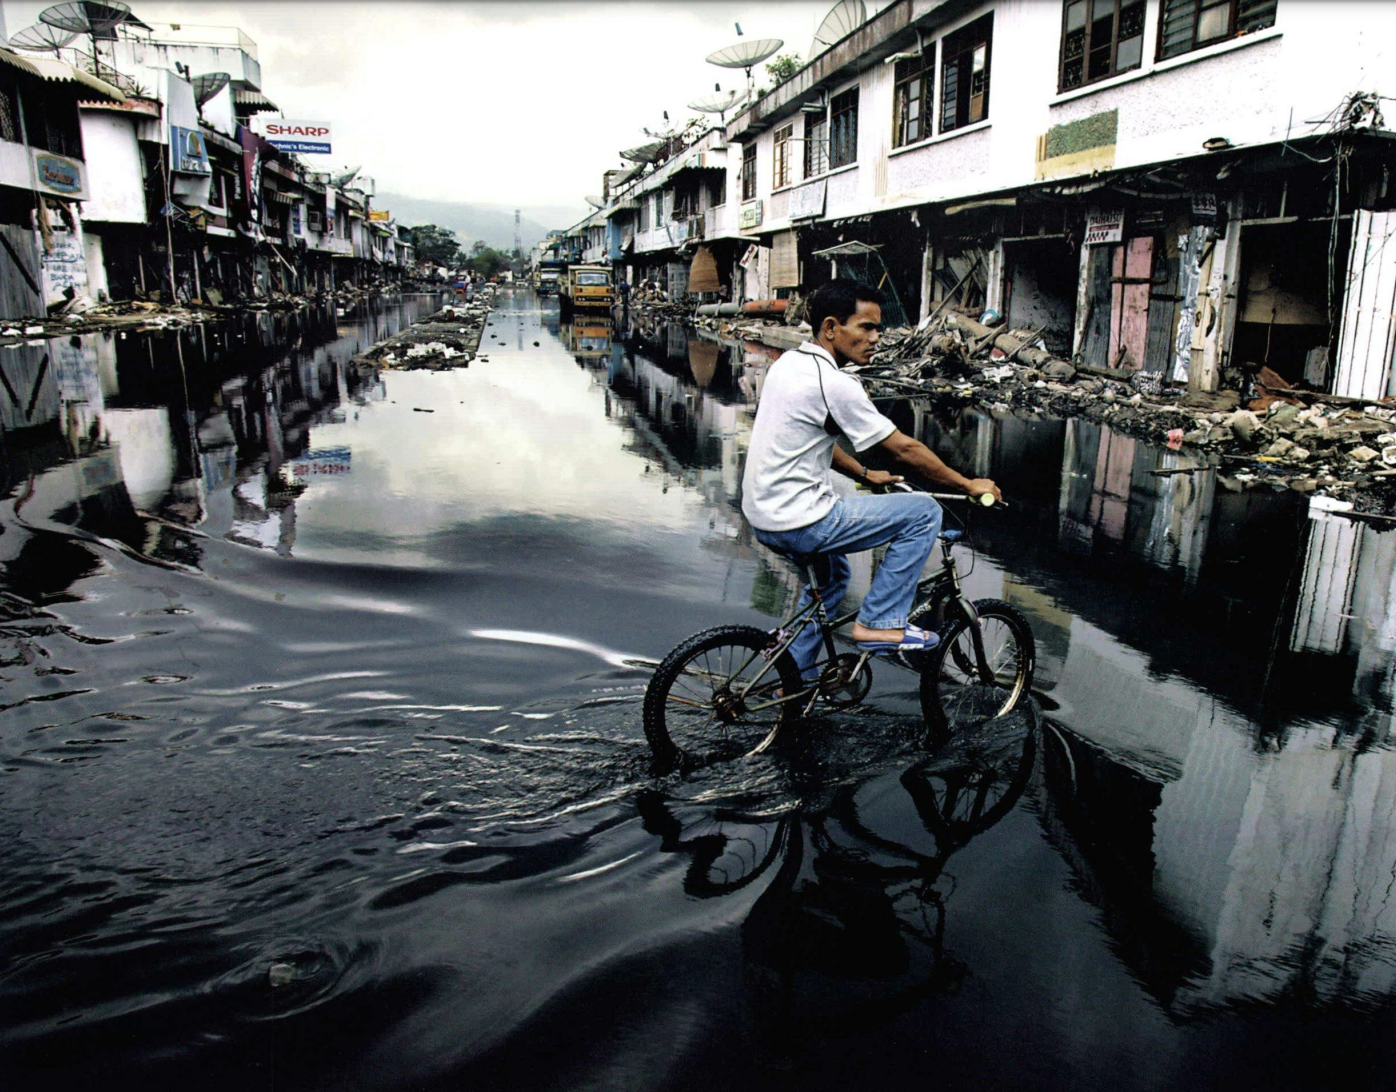 A man rides a bike through a flooded street.